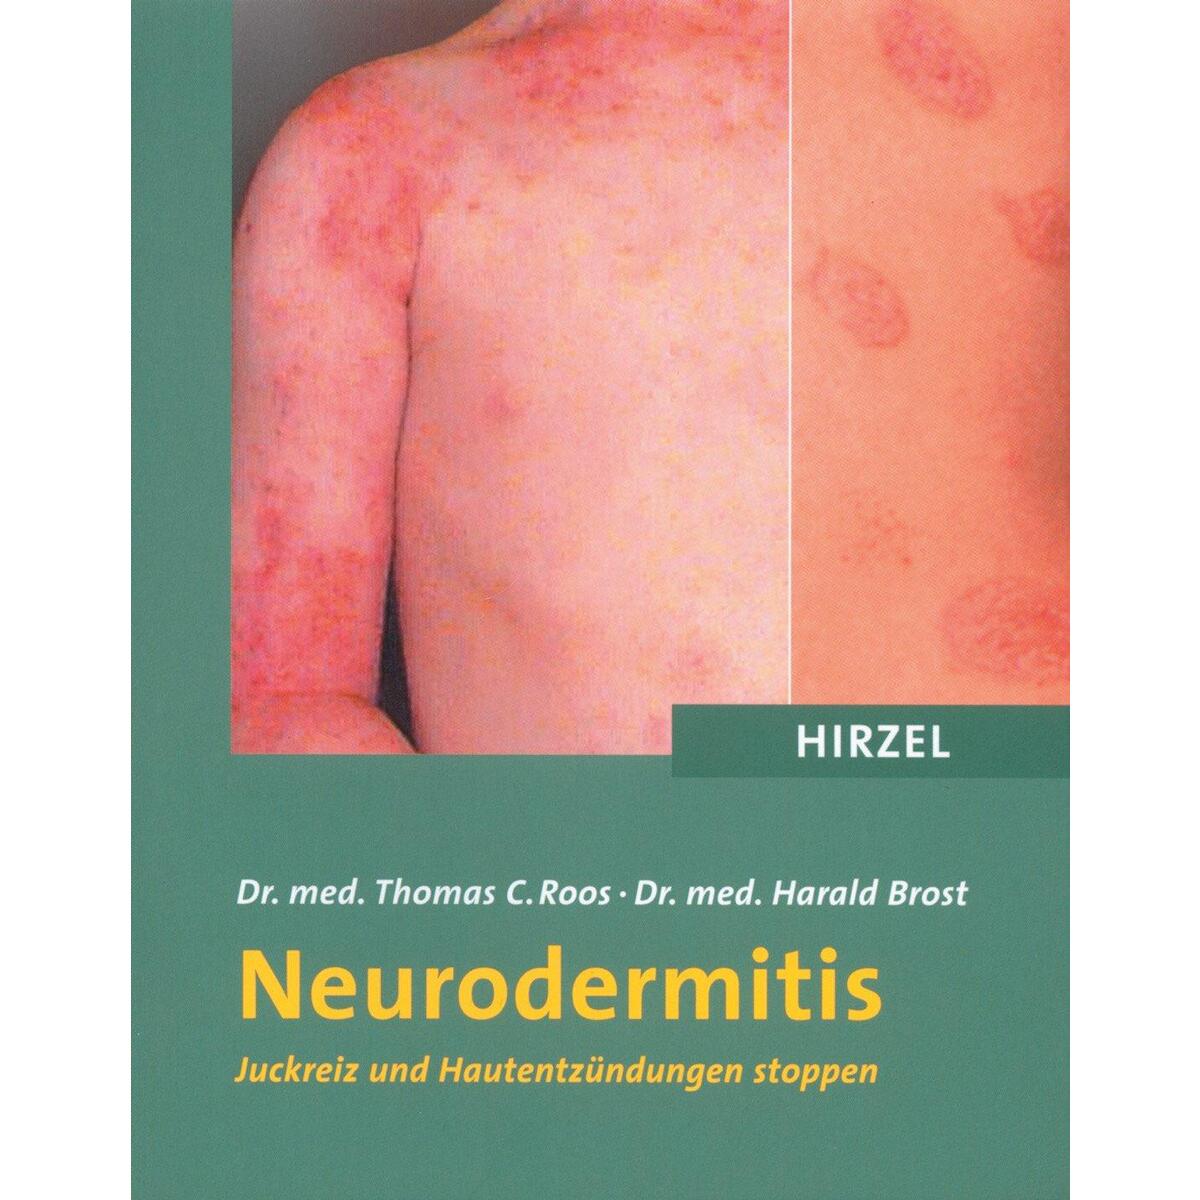 Neurodermitis von Hirzel S. Verlag